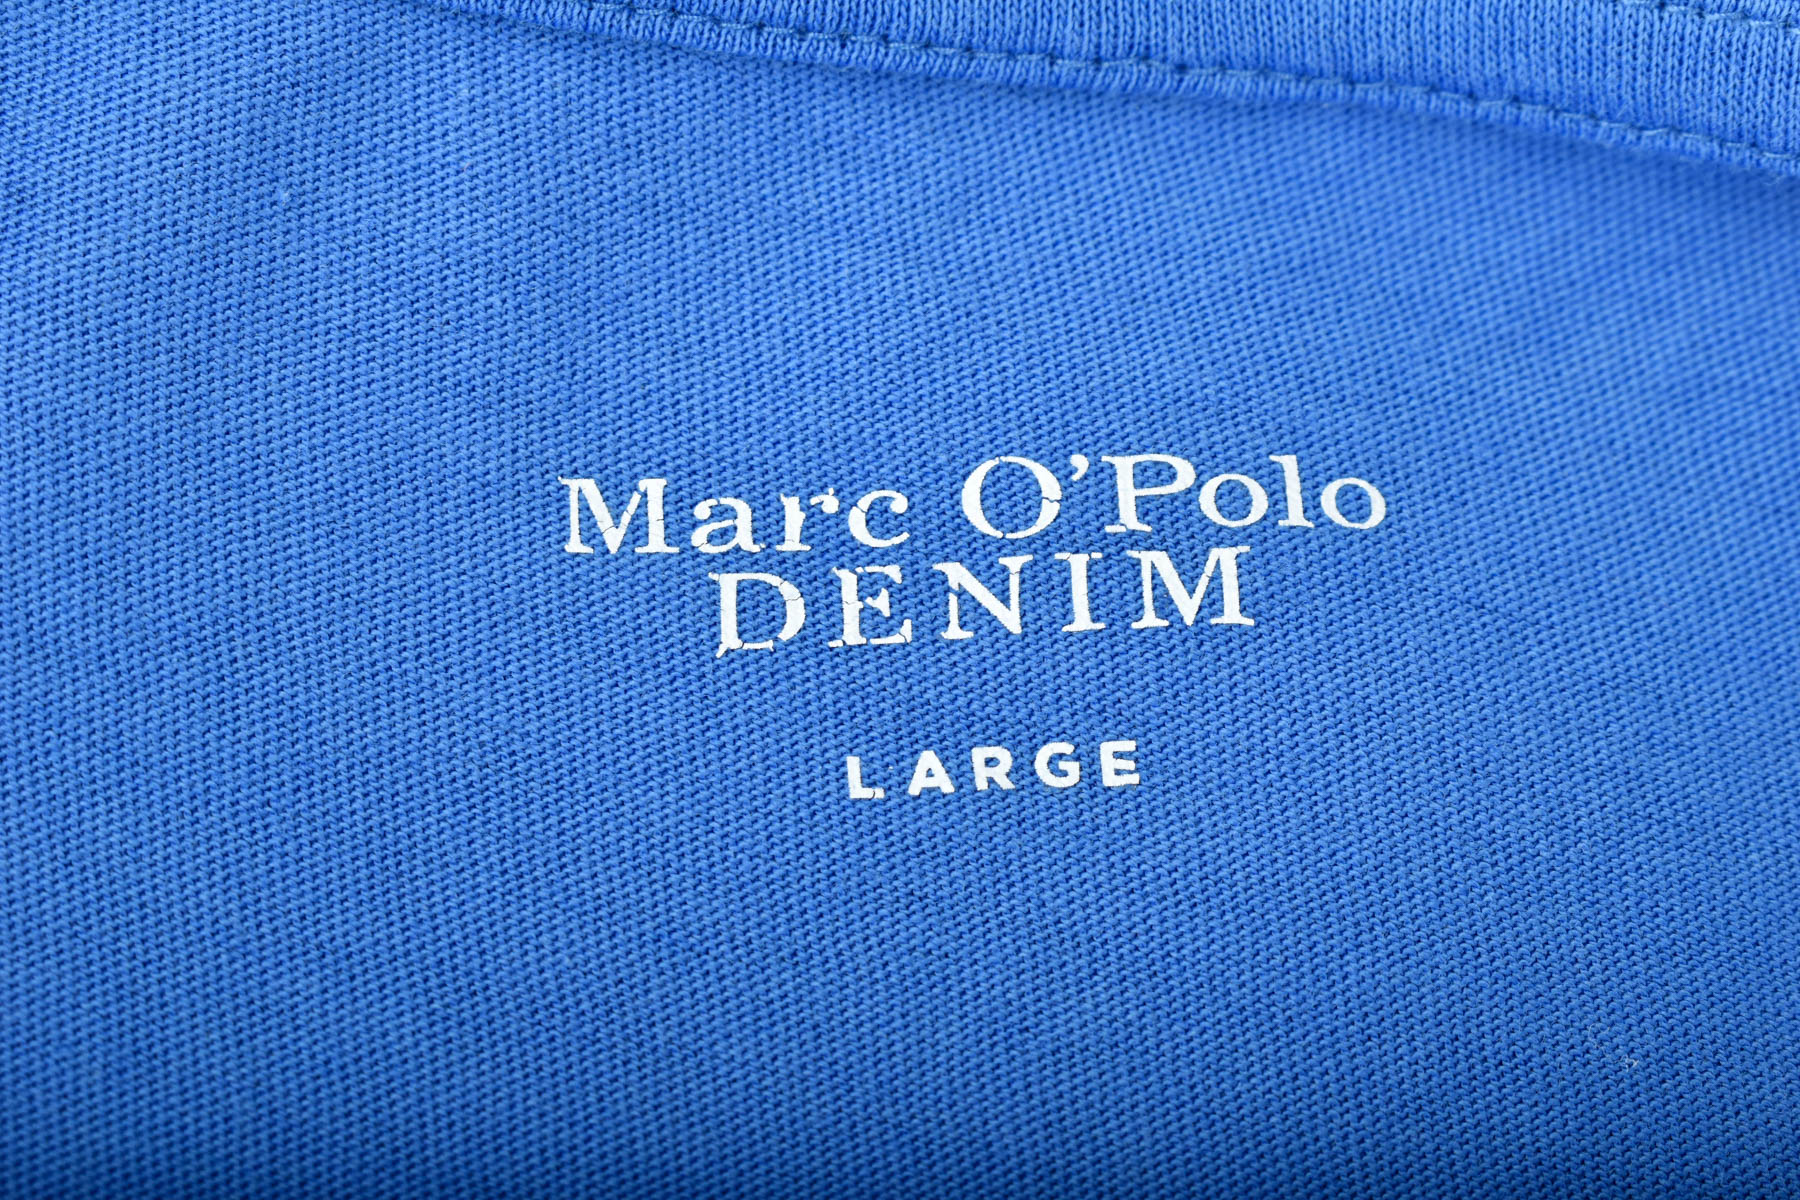 Women's t-shirt - Marc O' Polo - 2